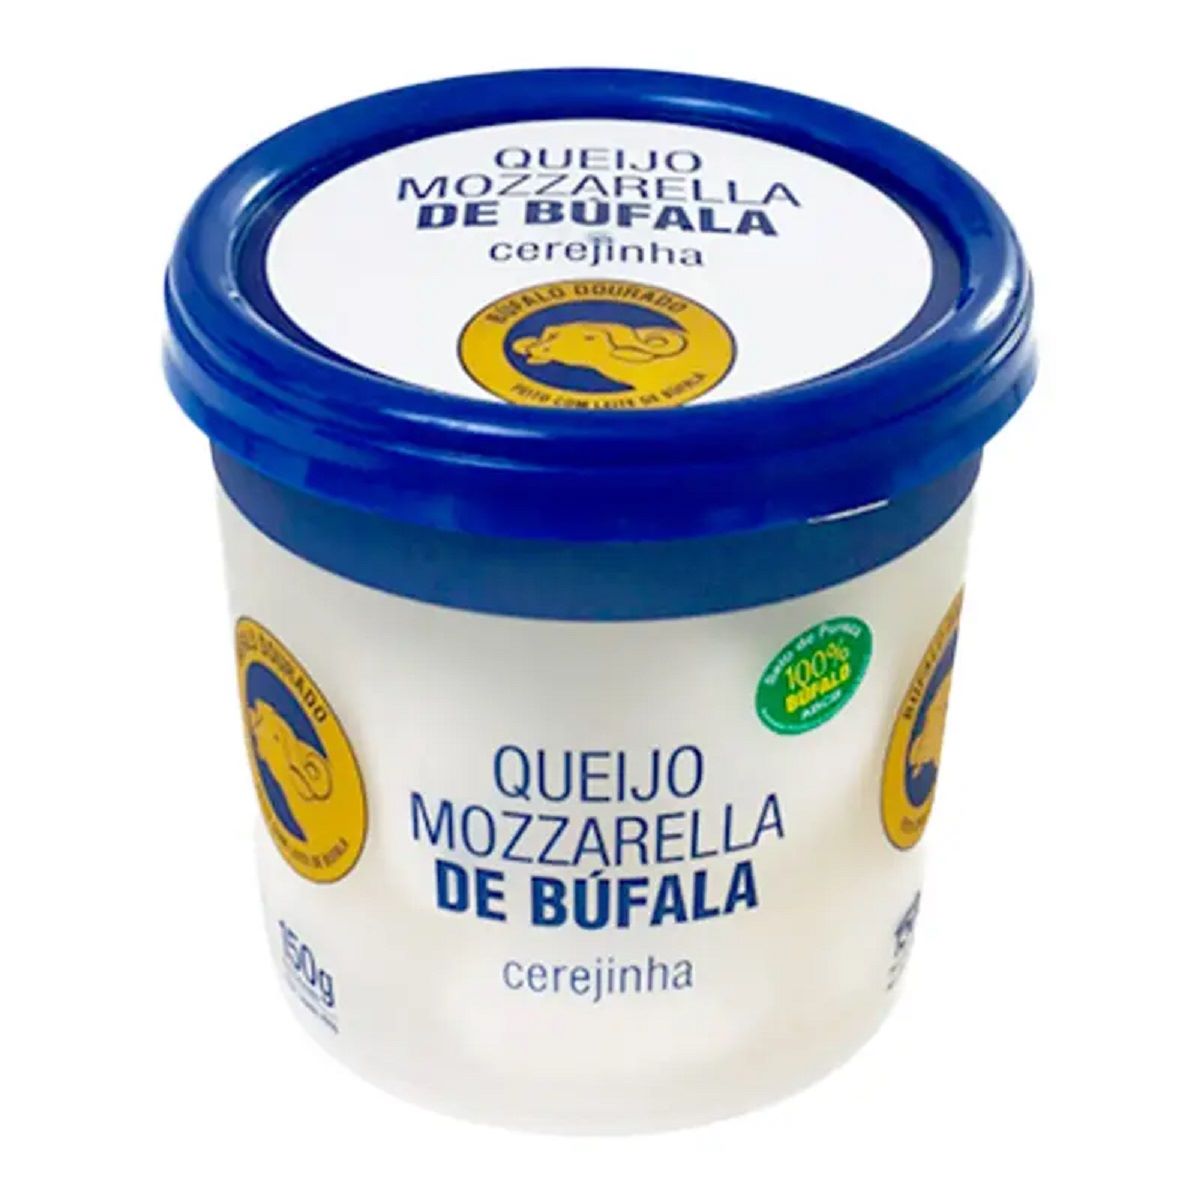 queijo-mozzarela-bufala-cerejinha-bufalo-dourado-250-g-1.jpg